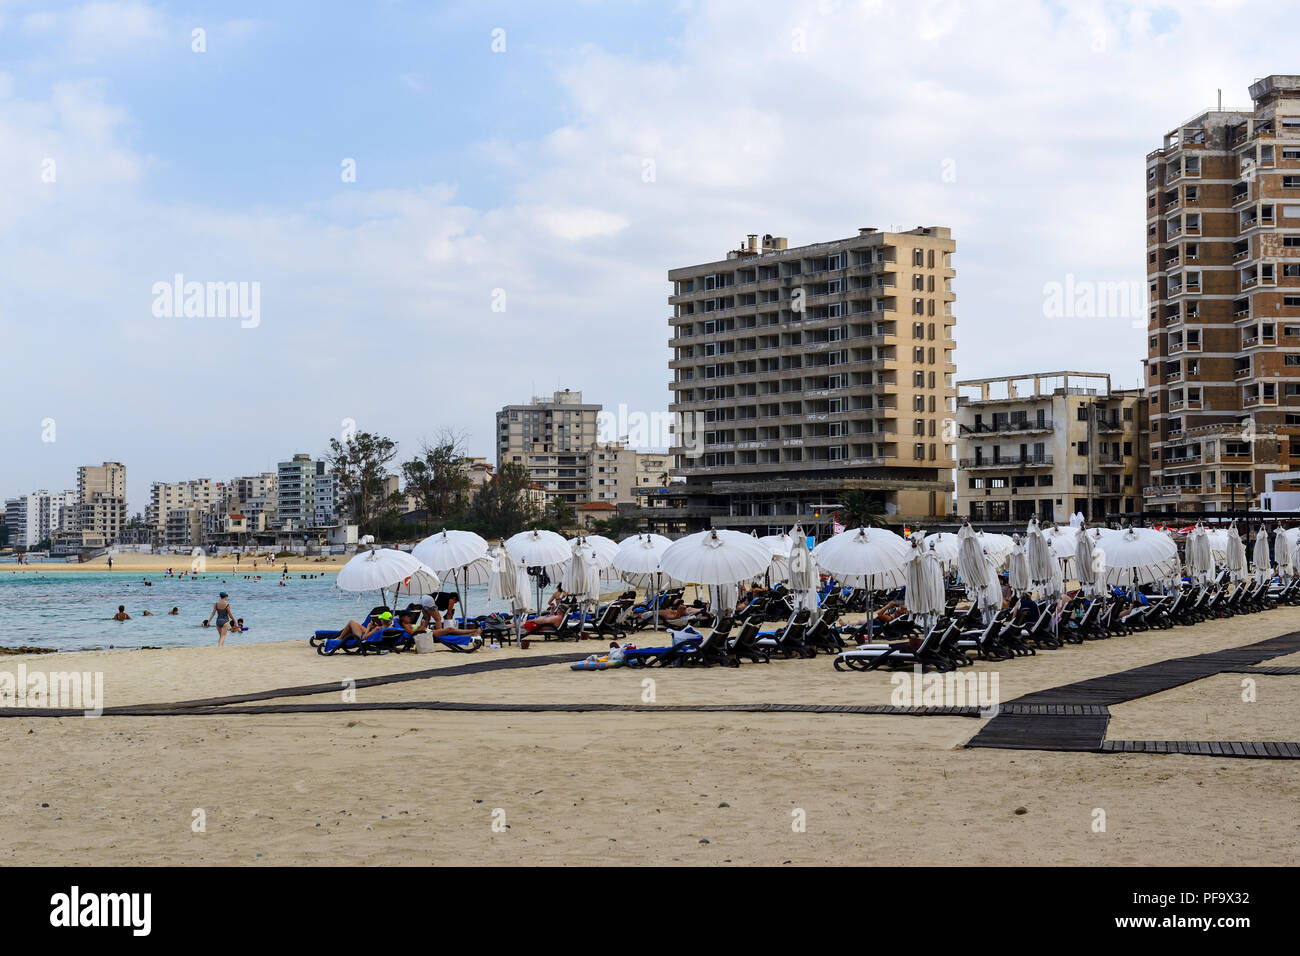 Touristen auf Palm Beach in Famagusta (Gazimagusa) mit verlassenen Hotels und Wohnblocks im Hintergrund, Türkische Republik Nordzypern Stockfoto